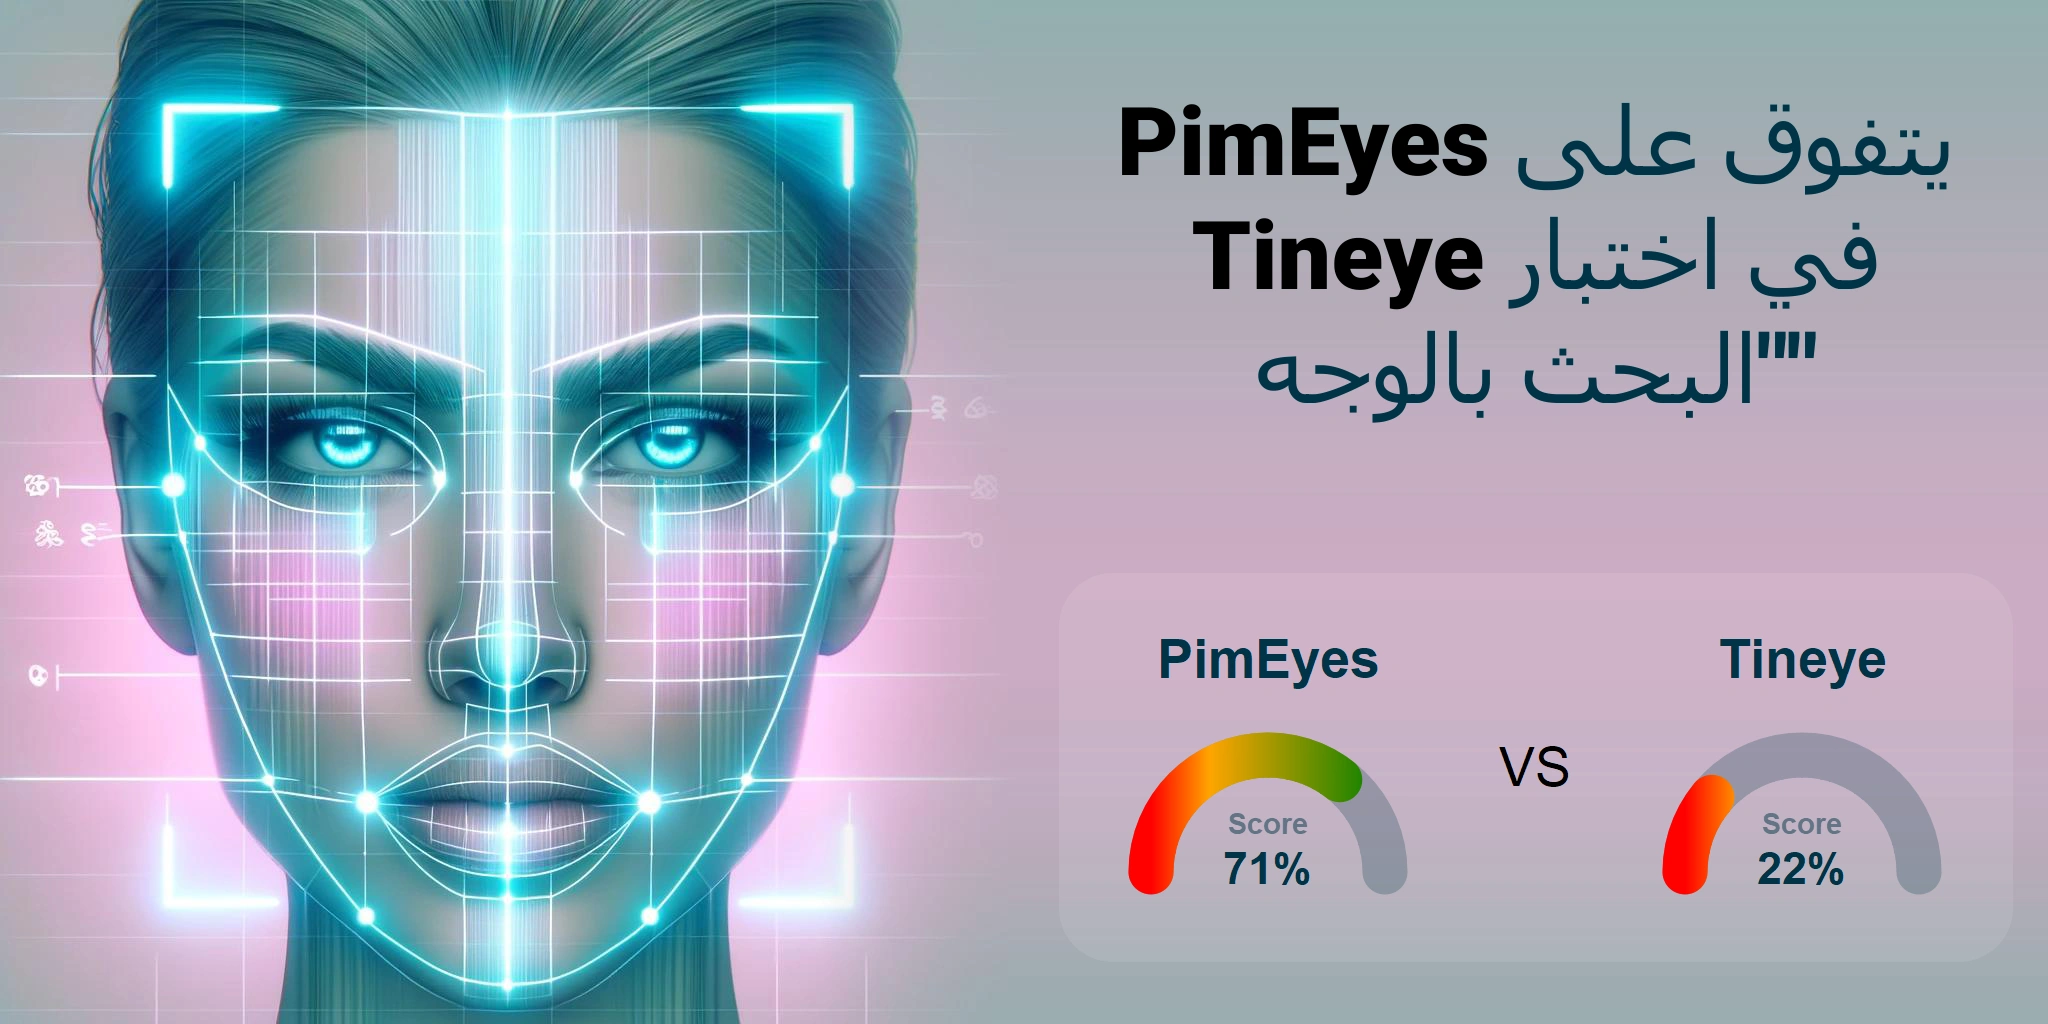 ما هو الأفضل للبحث بالوجه: <br>PimEyes أو Tineye؟